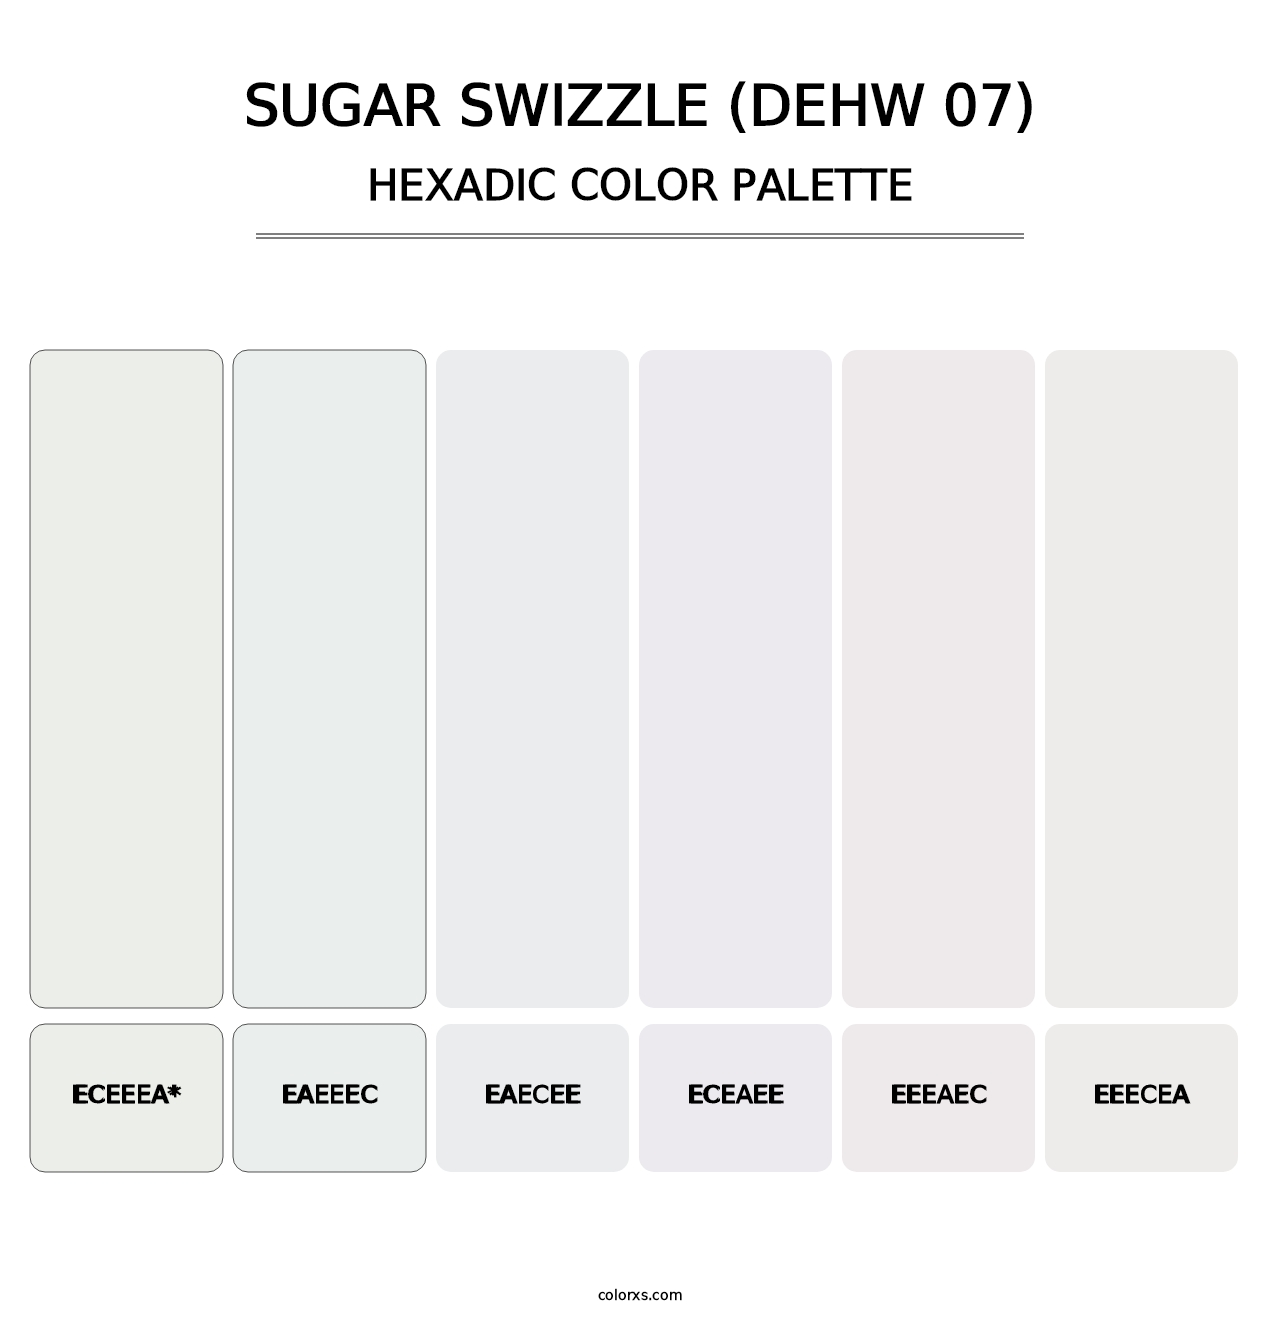 Sugar Swizzle (DEHW 07) - Hexadic Color Palette